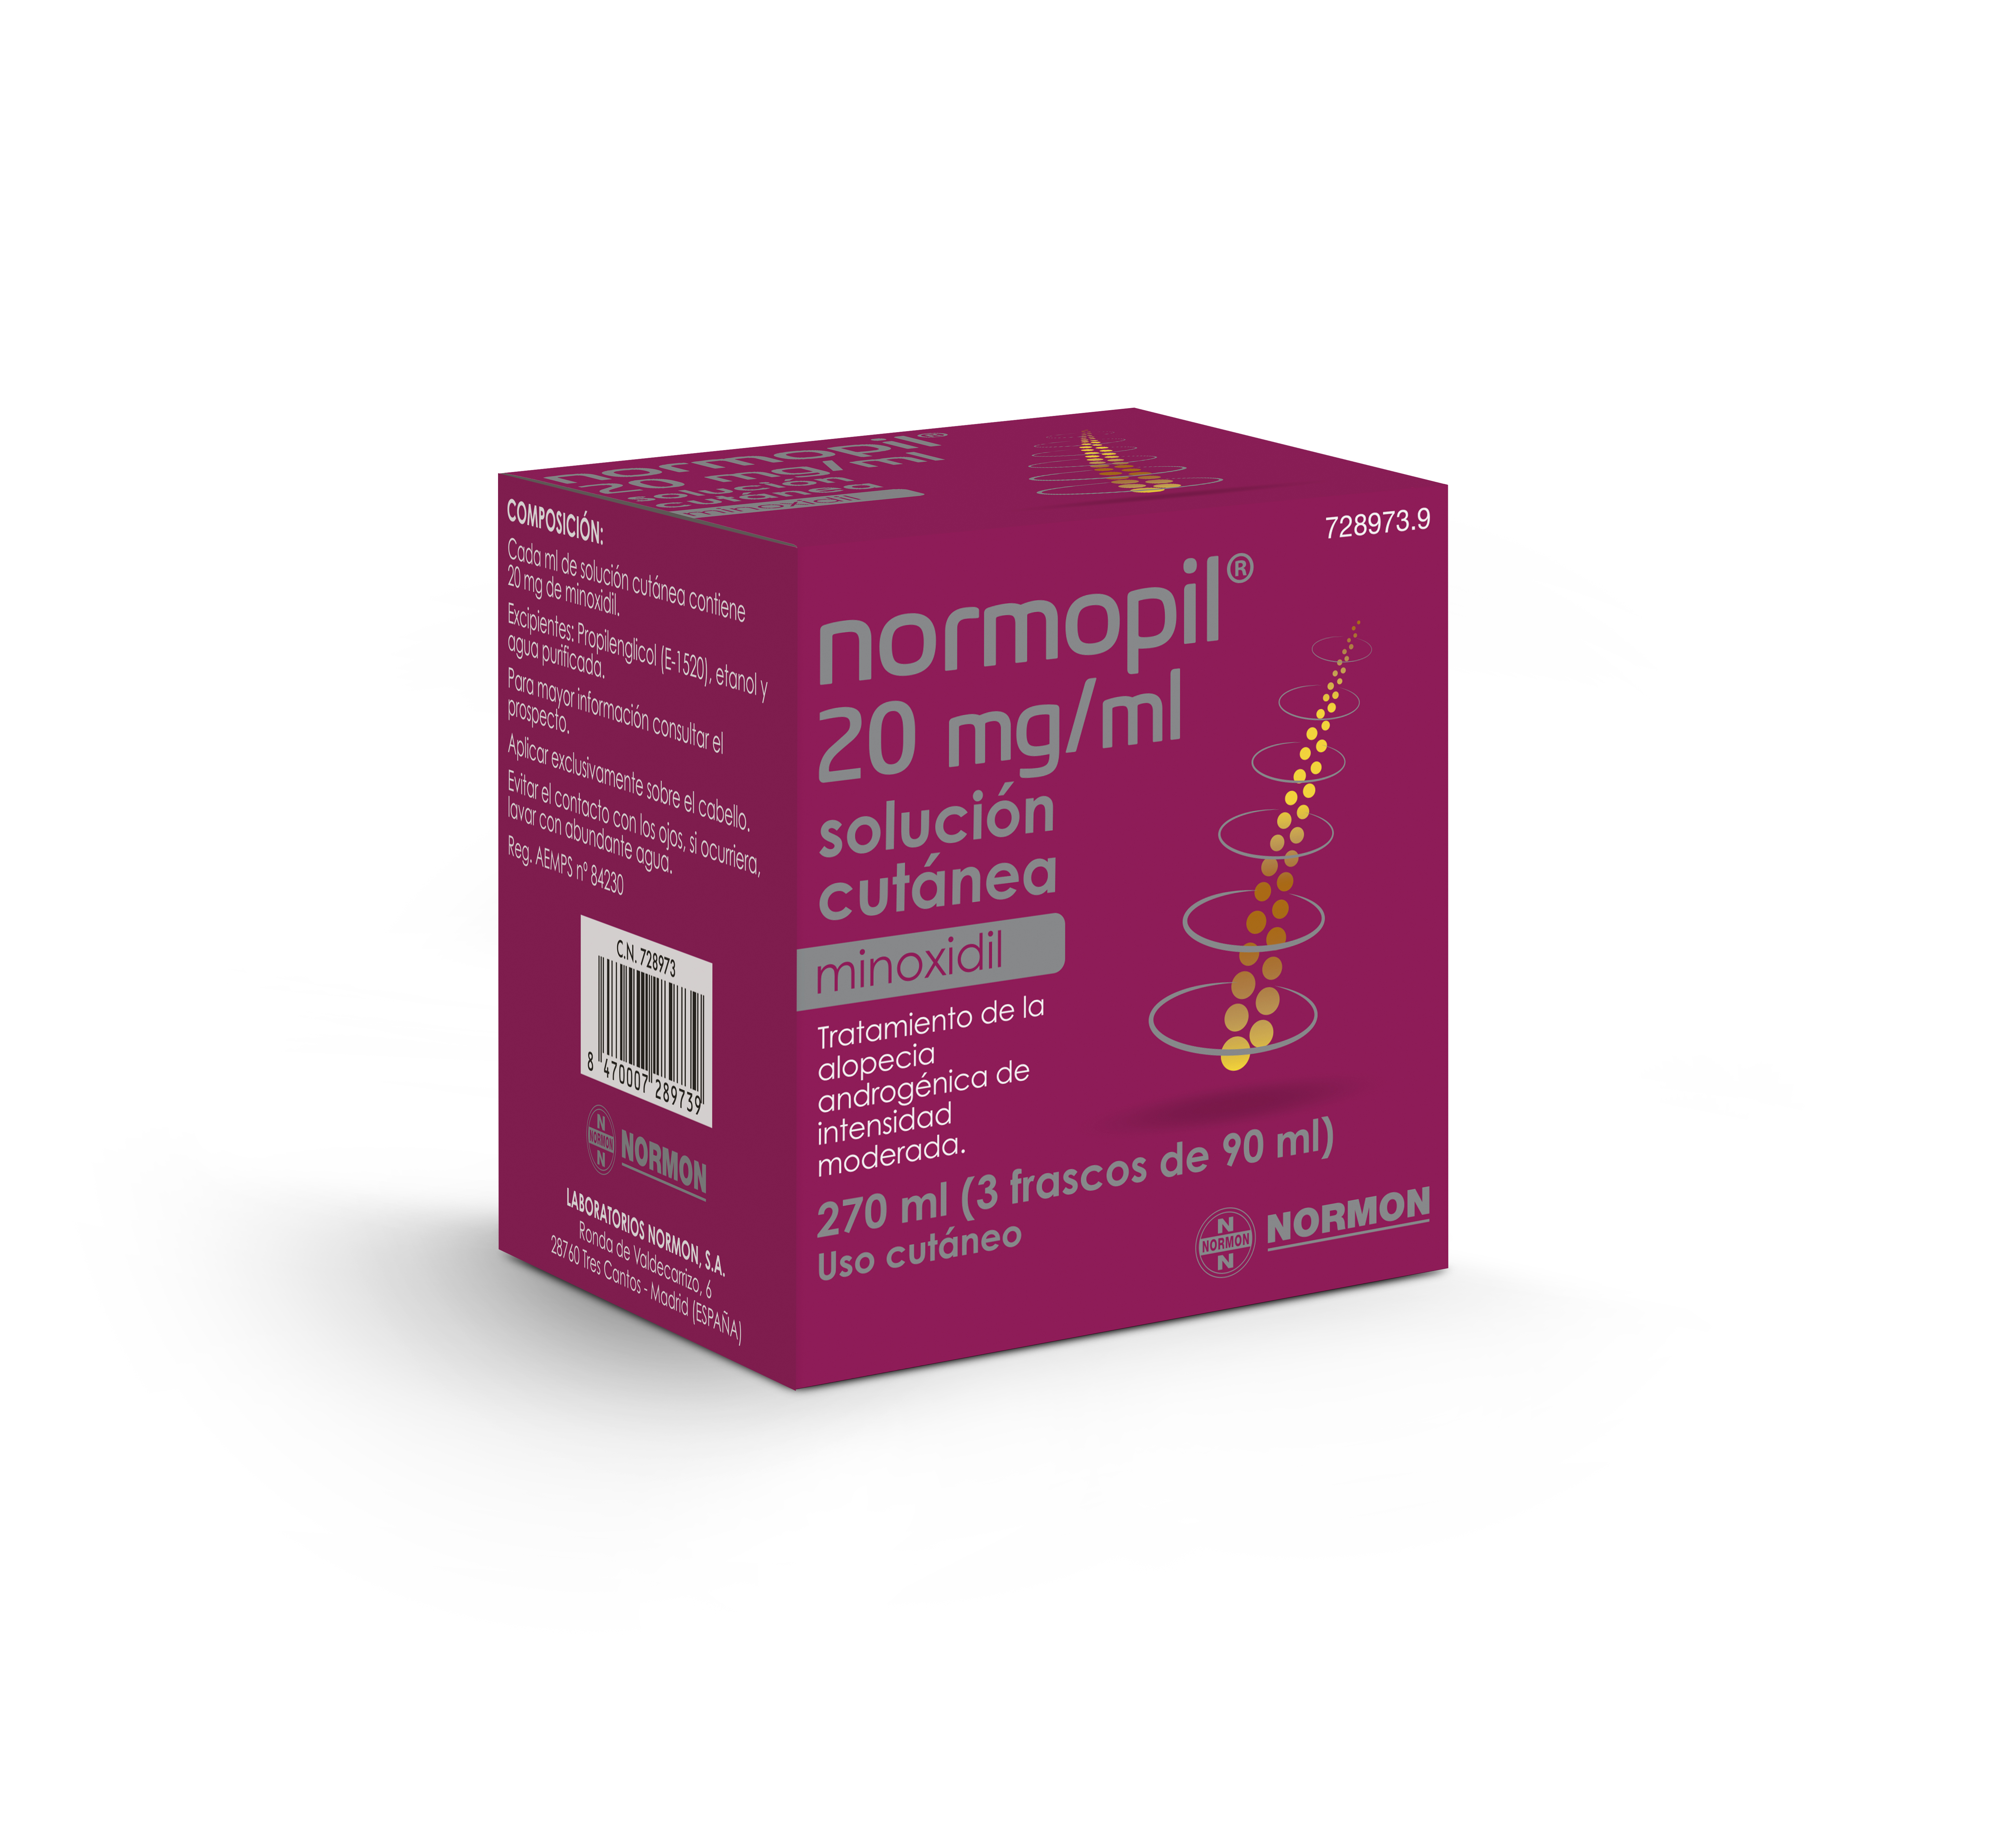 NORMOPIL 20 mg /ml Solución cutánea, 3 frasco 90 ml